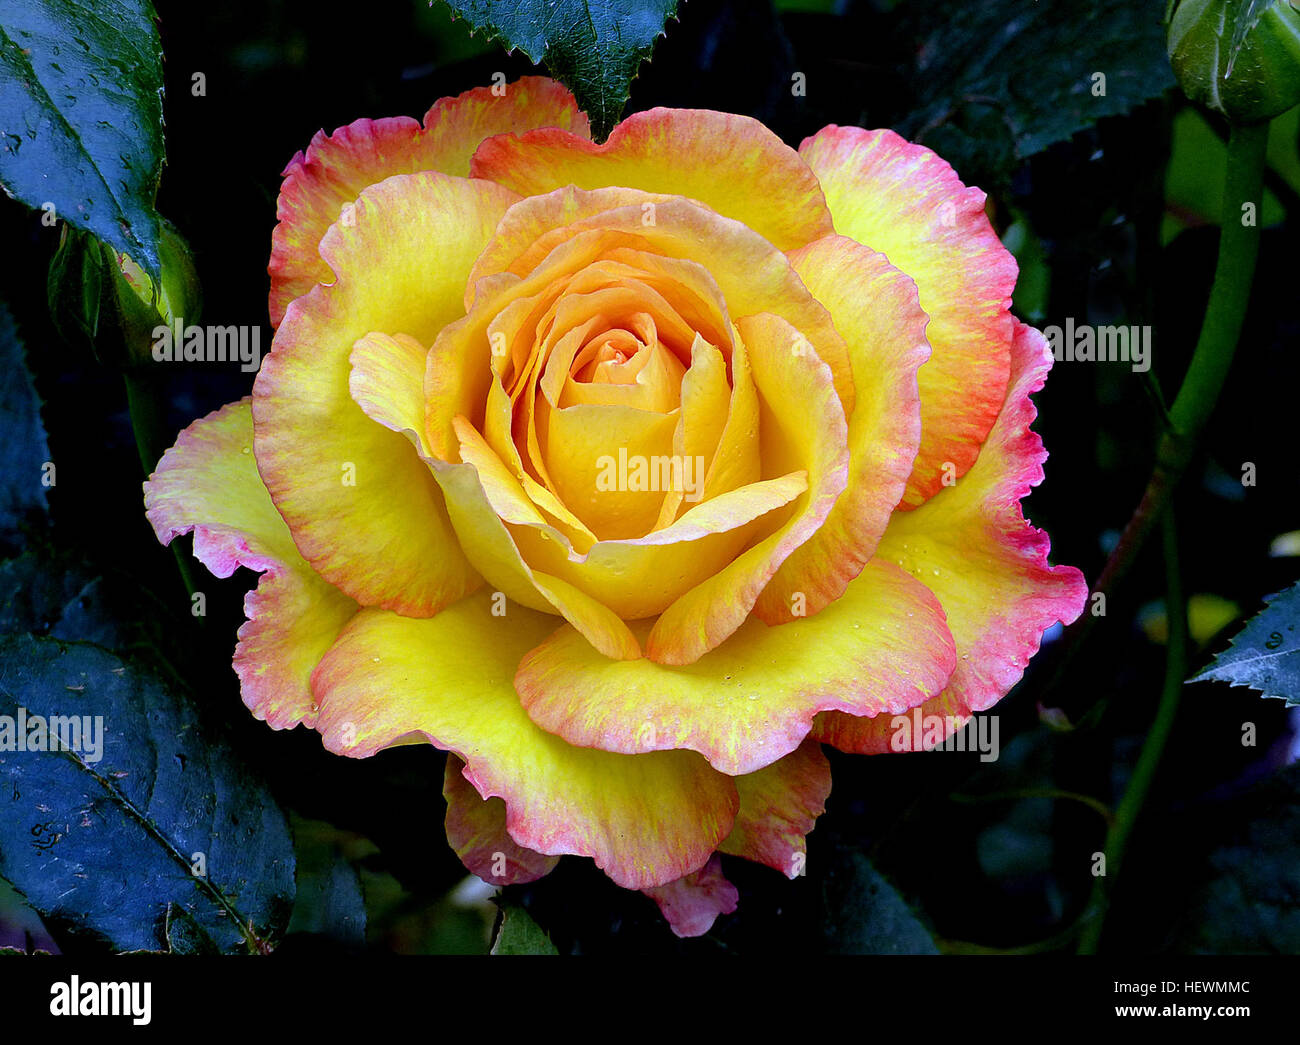 Solitär-Jahr: 1987 Hybride Terosen Höhe: 4ft plus hin und wieder eine Rose gezüchtet, die den Puls beschleunigt und wirklich nimmt das Auge, und diese Schönheit tut auf jeden Fall beides. Eine statuarische rose mit perfekt geformten Blüten in einem schönen gelb und eingefasst mit Kirschrot.  Die exquisiten großen Blüten mit attraktiven Bronze gesundem Laub gesichert sind, und das ganze Bild ist eine reine Schönheit.  Eine gute gesunde rose wo die Blüten werden in Hitzewallungen während der ganzen Saison getragen und den Wiederholungszyklus ist ziemlich schnell. Ein muss für jeden Rosenliebhaber. Wunderbaren Duft.  Von Sam McGredy in Neuseeland gezüchtet Stockfoto